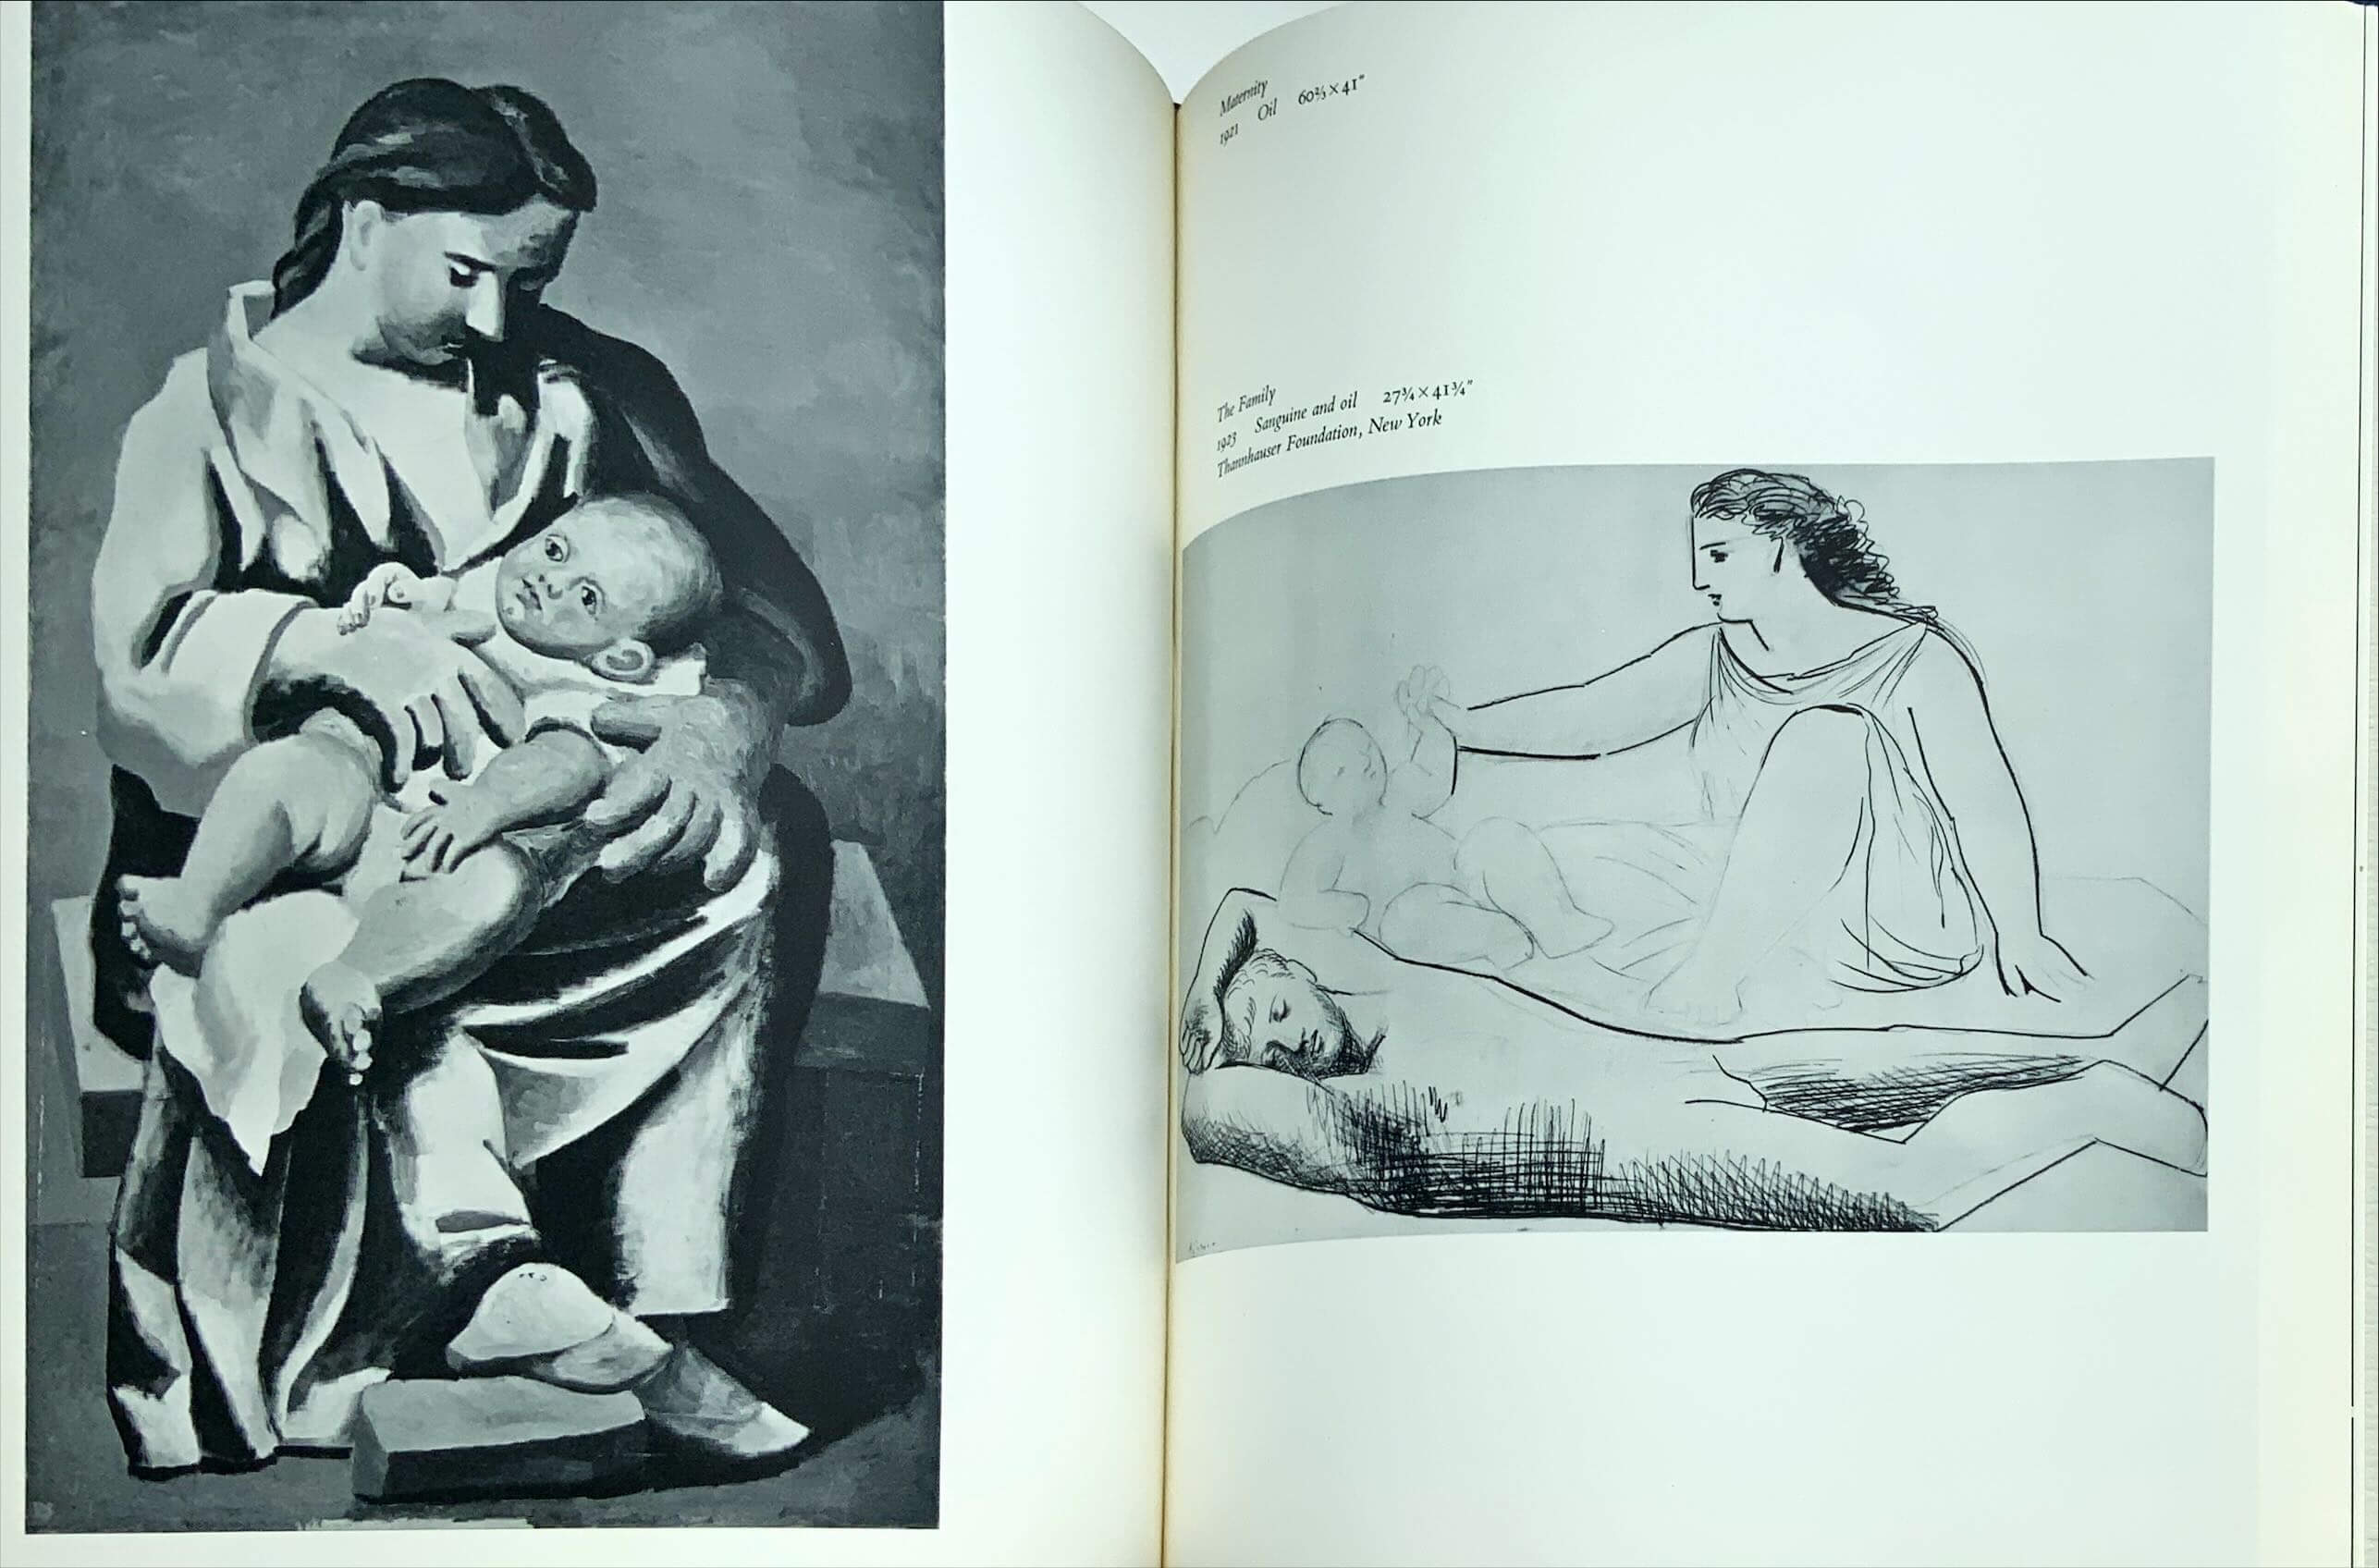 Conzett & Huber: Picasso's World of Children. by Helen Kay. 1965